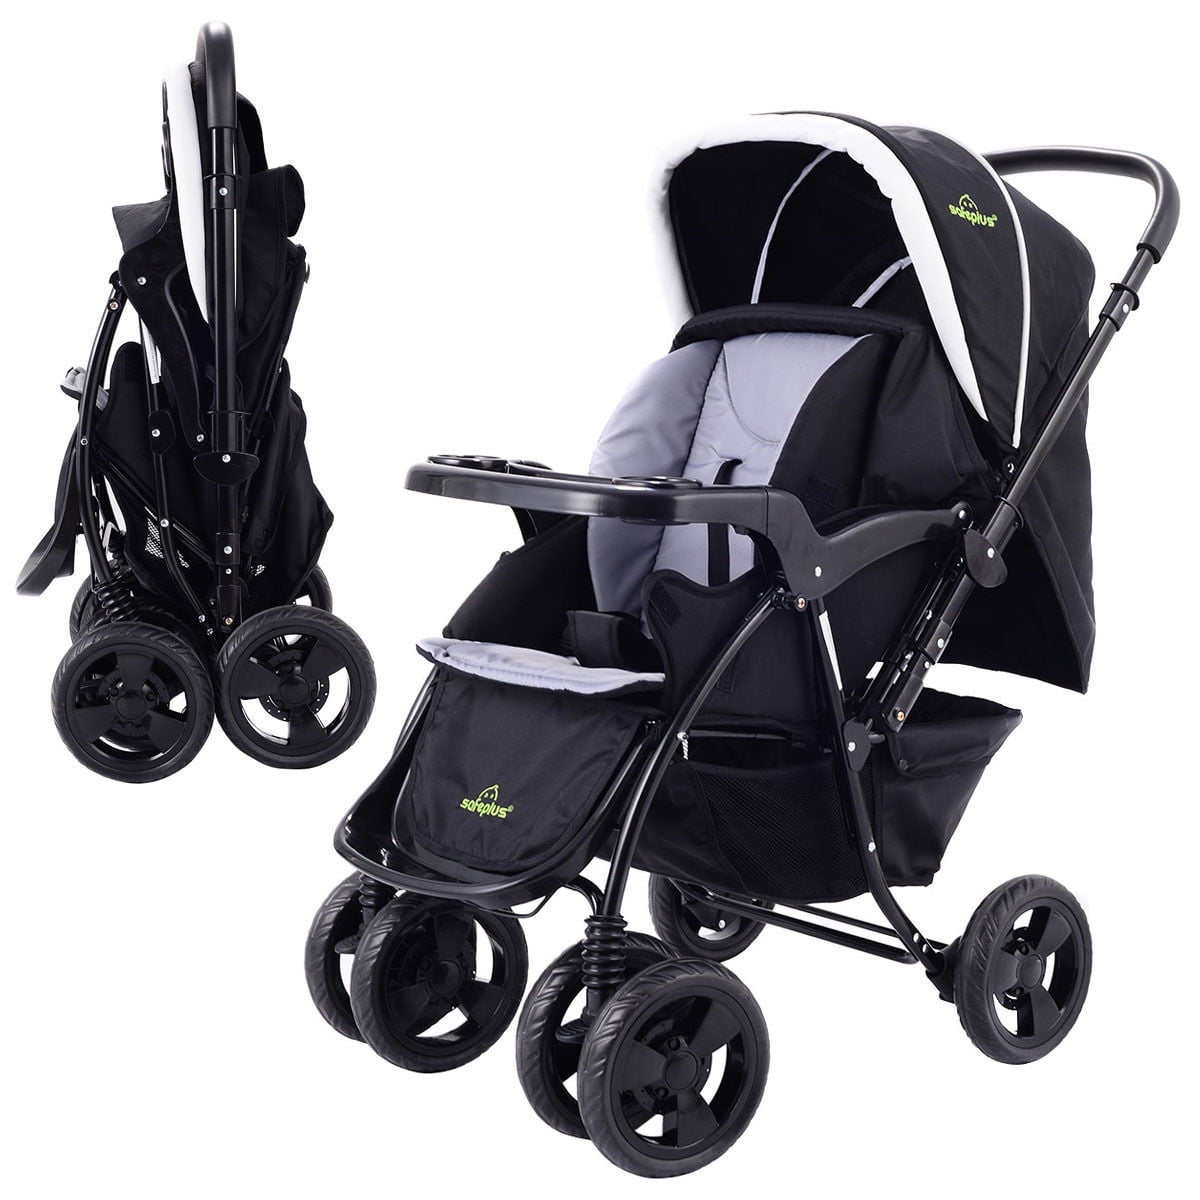 Baby Kids Stroller Buggy Pram Adjustable Backrest Lightweight Foldable Pushchair 